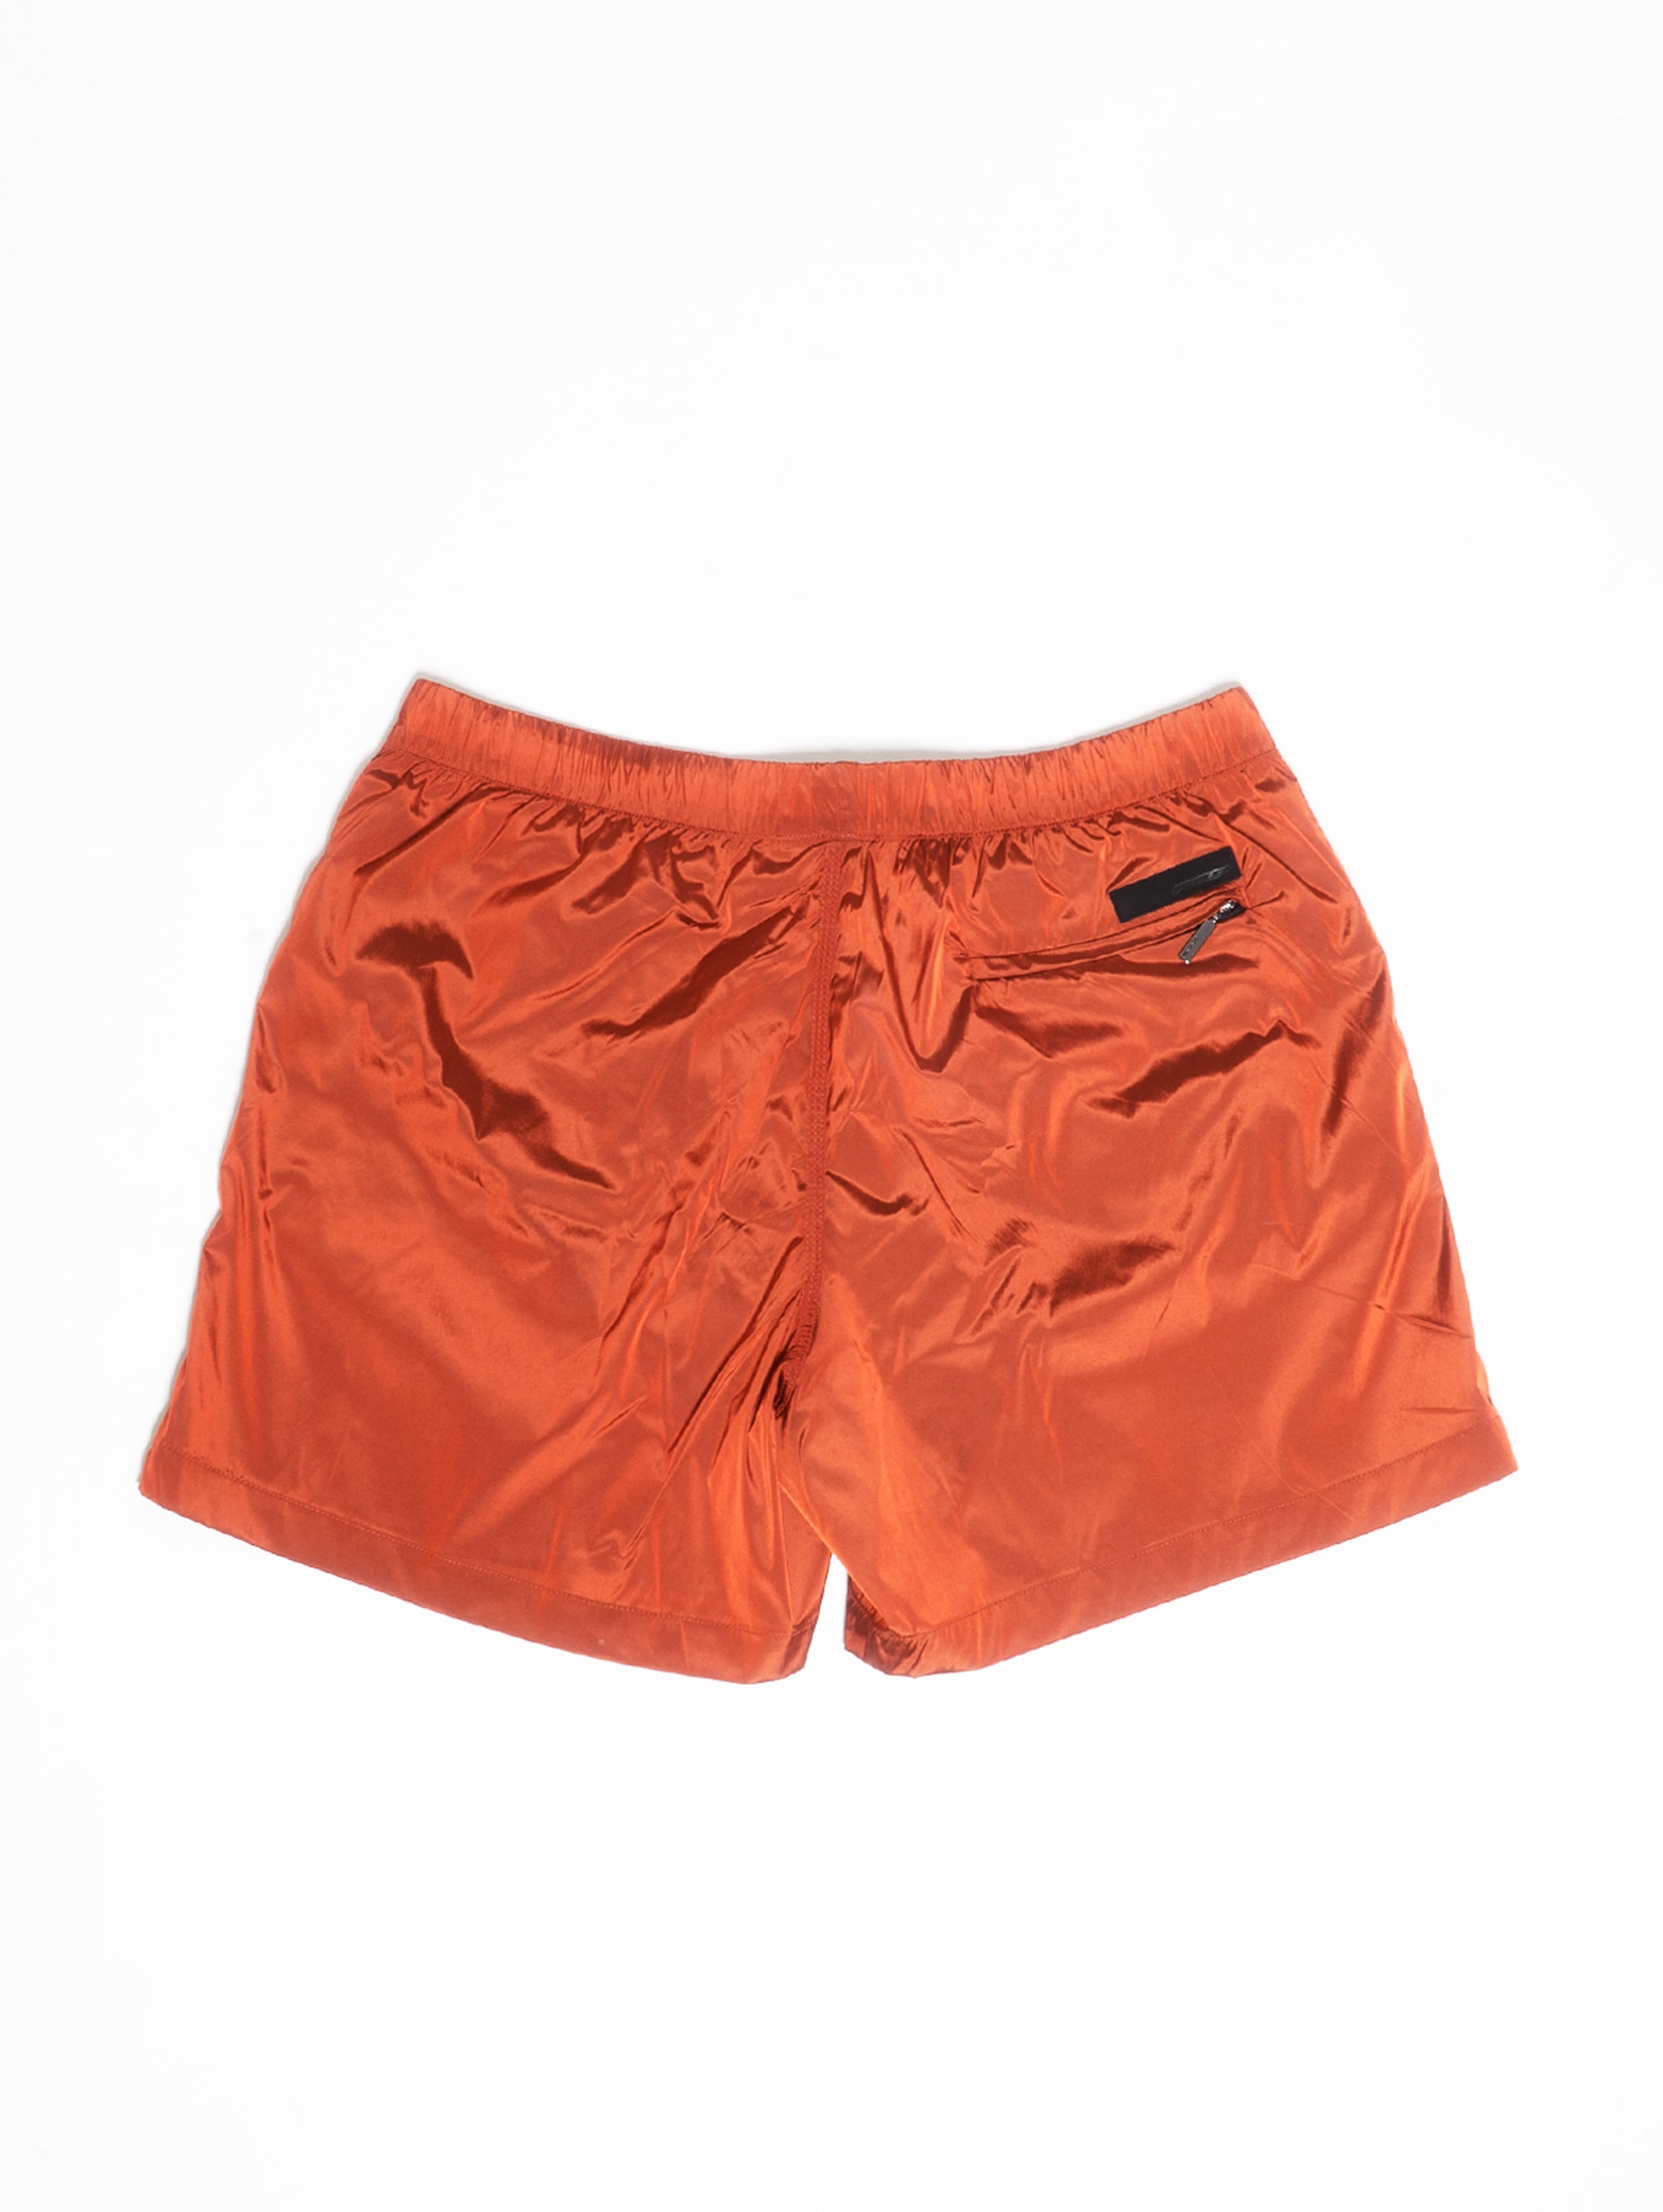 Orangefarbenes Meer-glänzendes Boxer-Kostüm